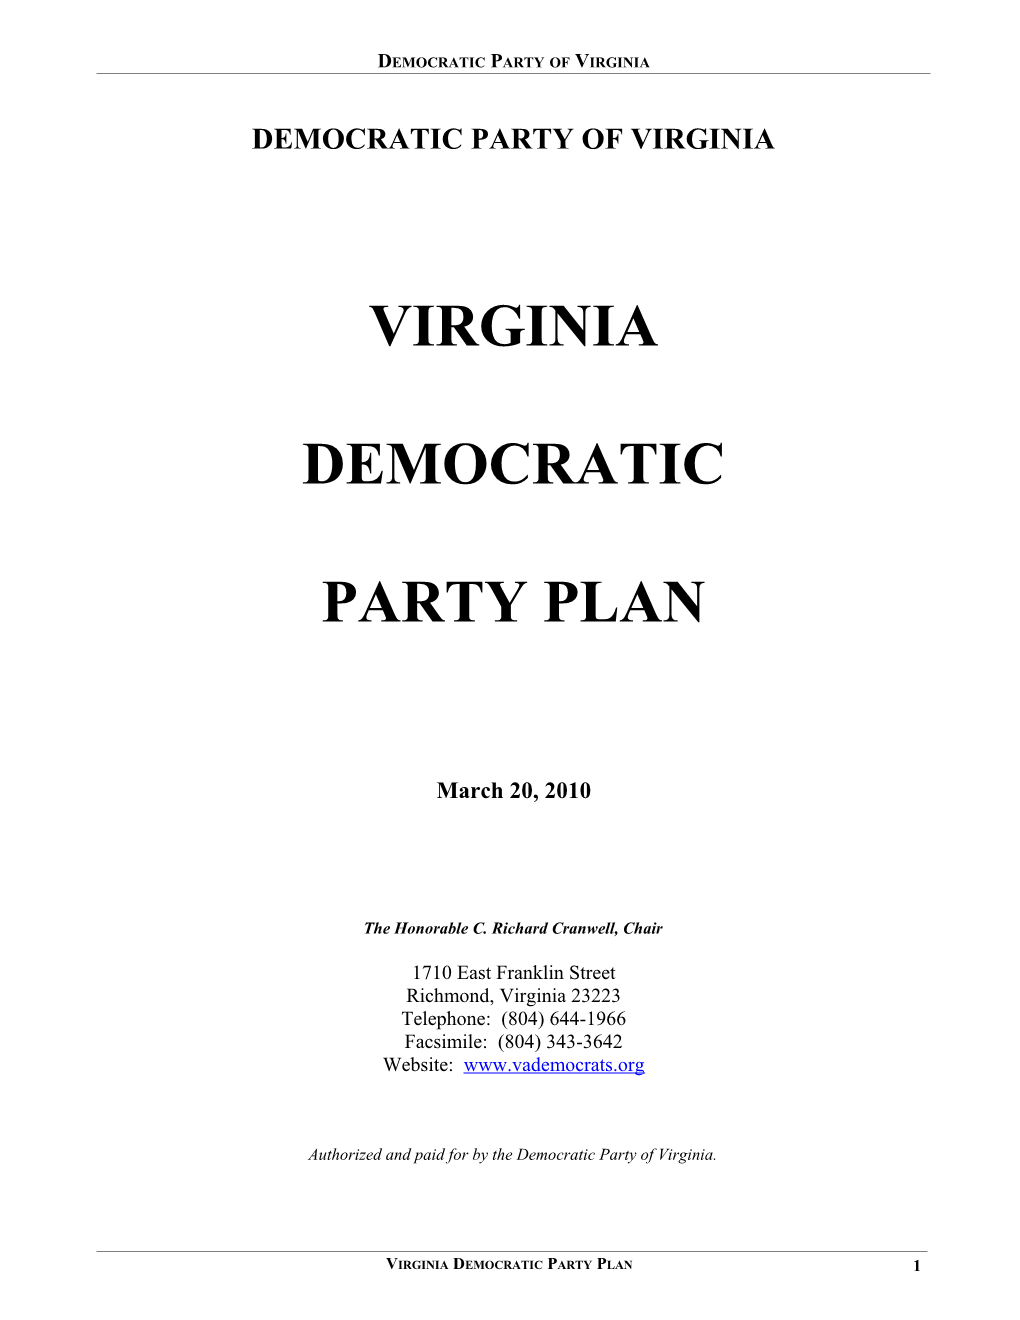 Virginia Democratic Party Plan